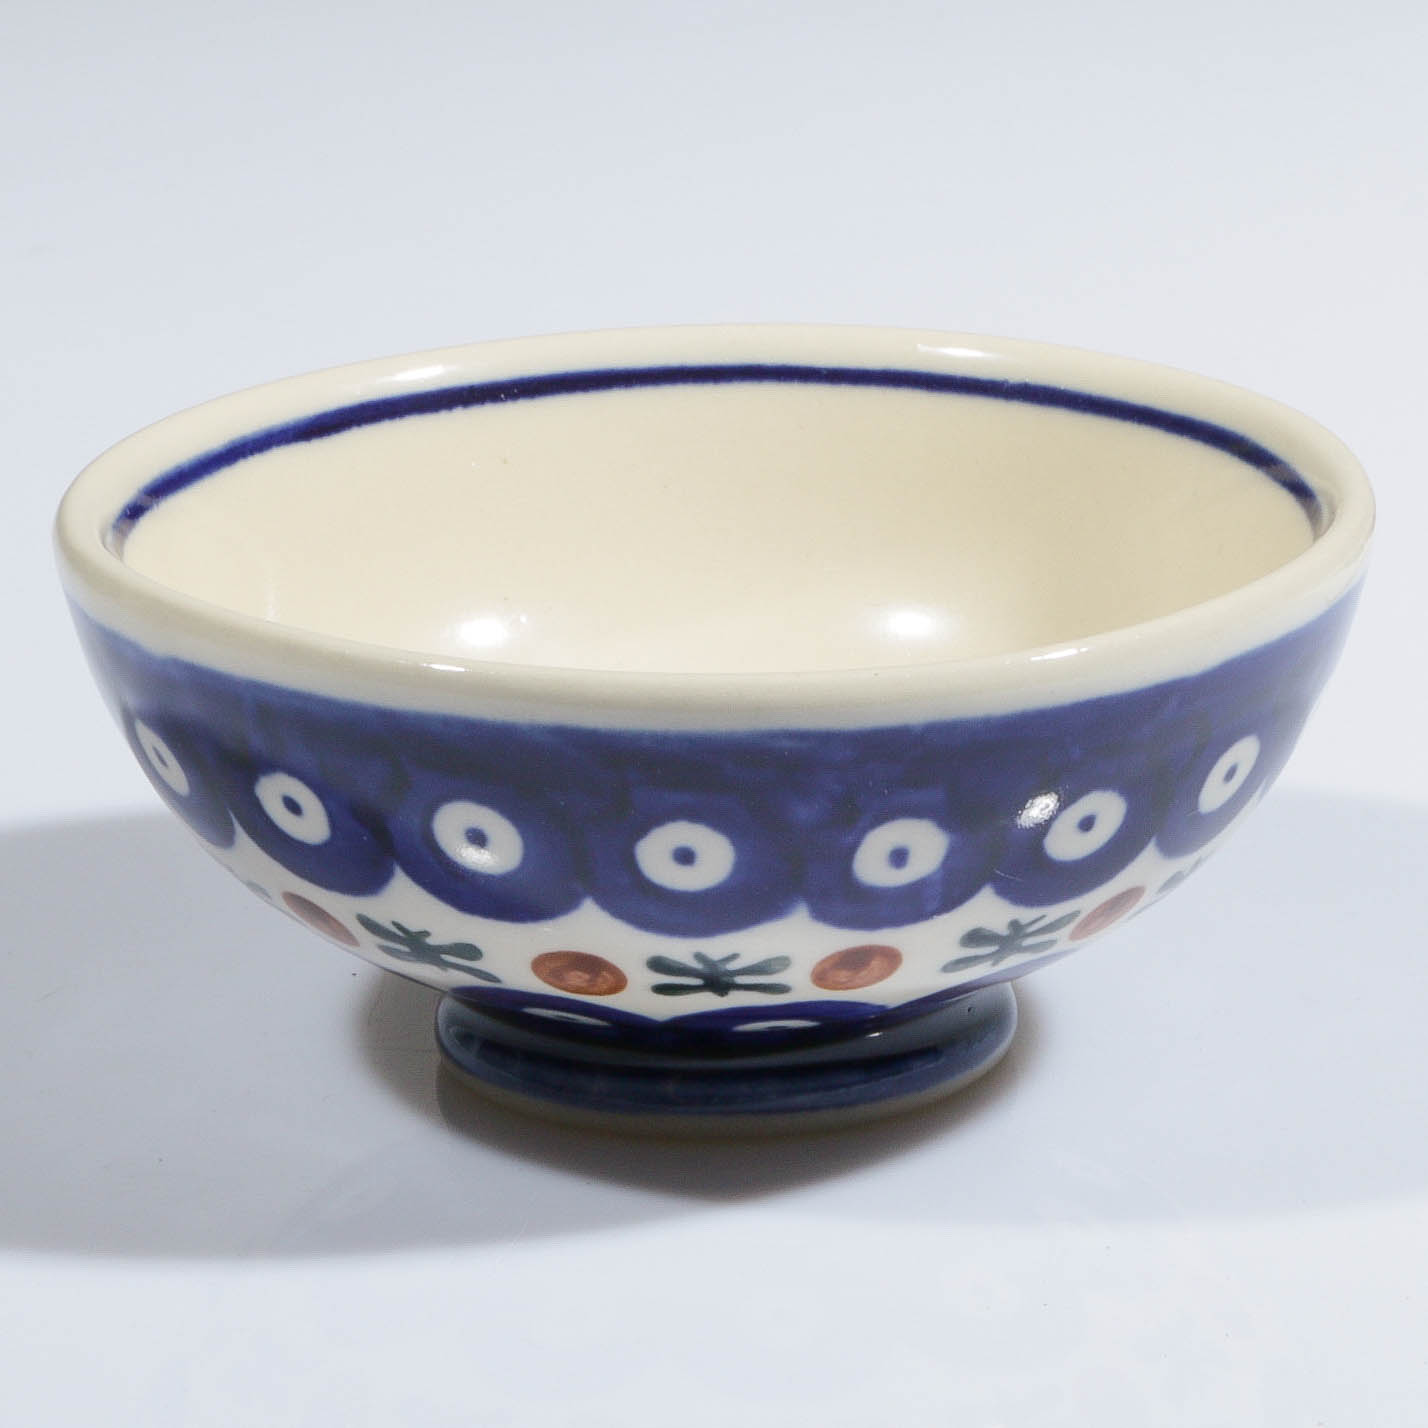 Tradizionale smalto casseruola da forno rettangolare in ceramica Lasagna 10 pollici/25.5 cm o.101 Bluelace Collection Boleslawiec Style modello 